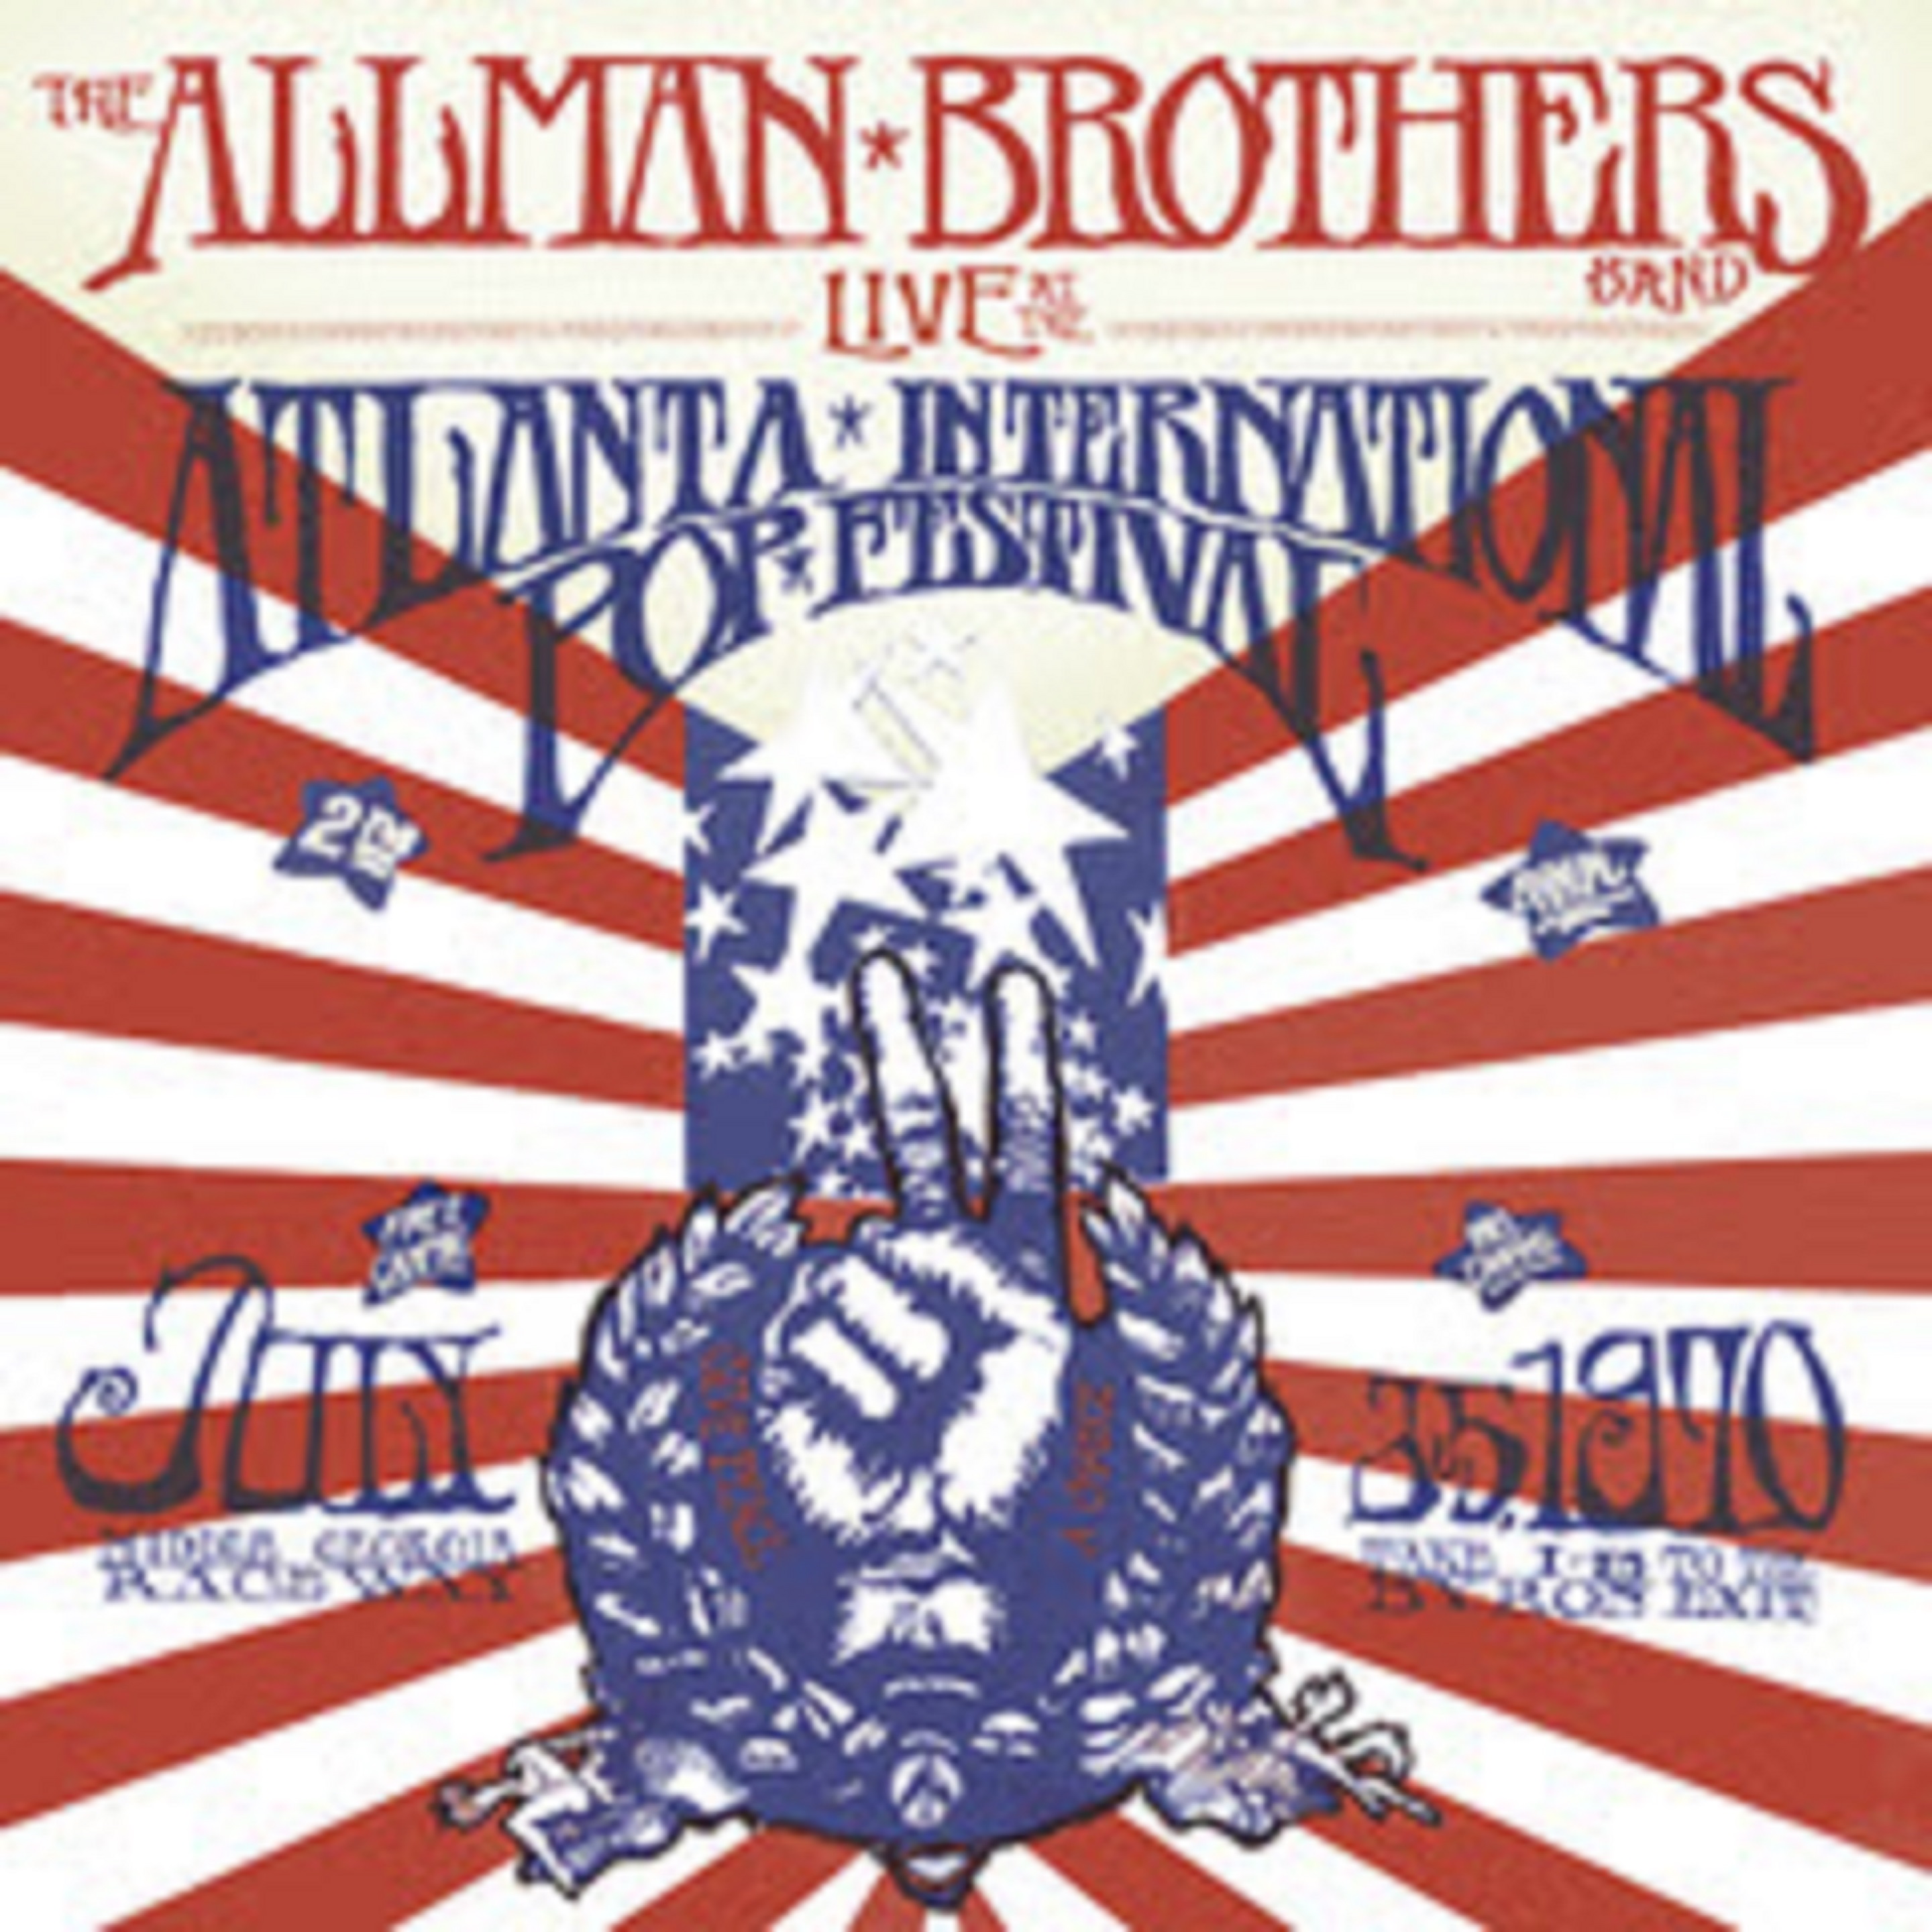 Allman Brothers Band at Atlanta Pop Festival July 4, 1970